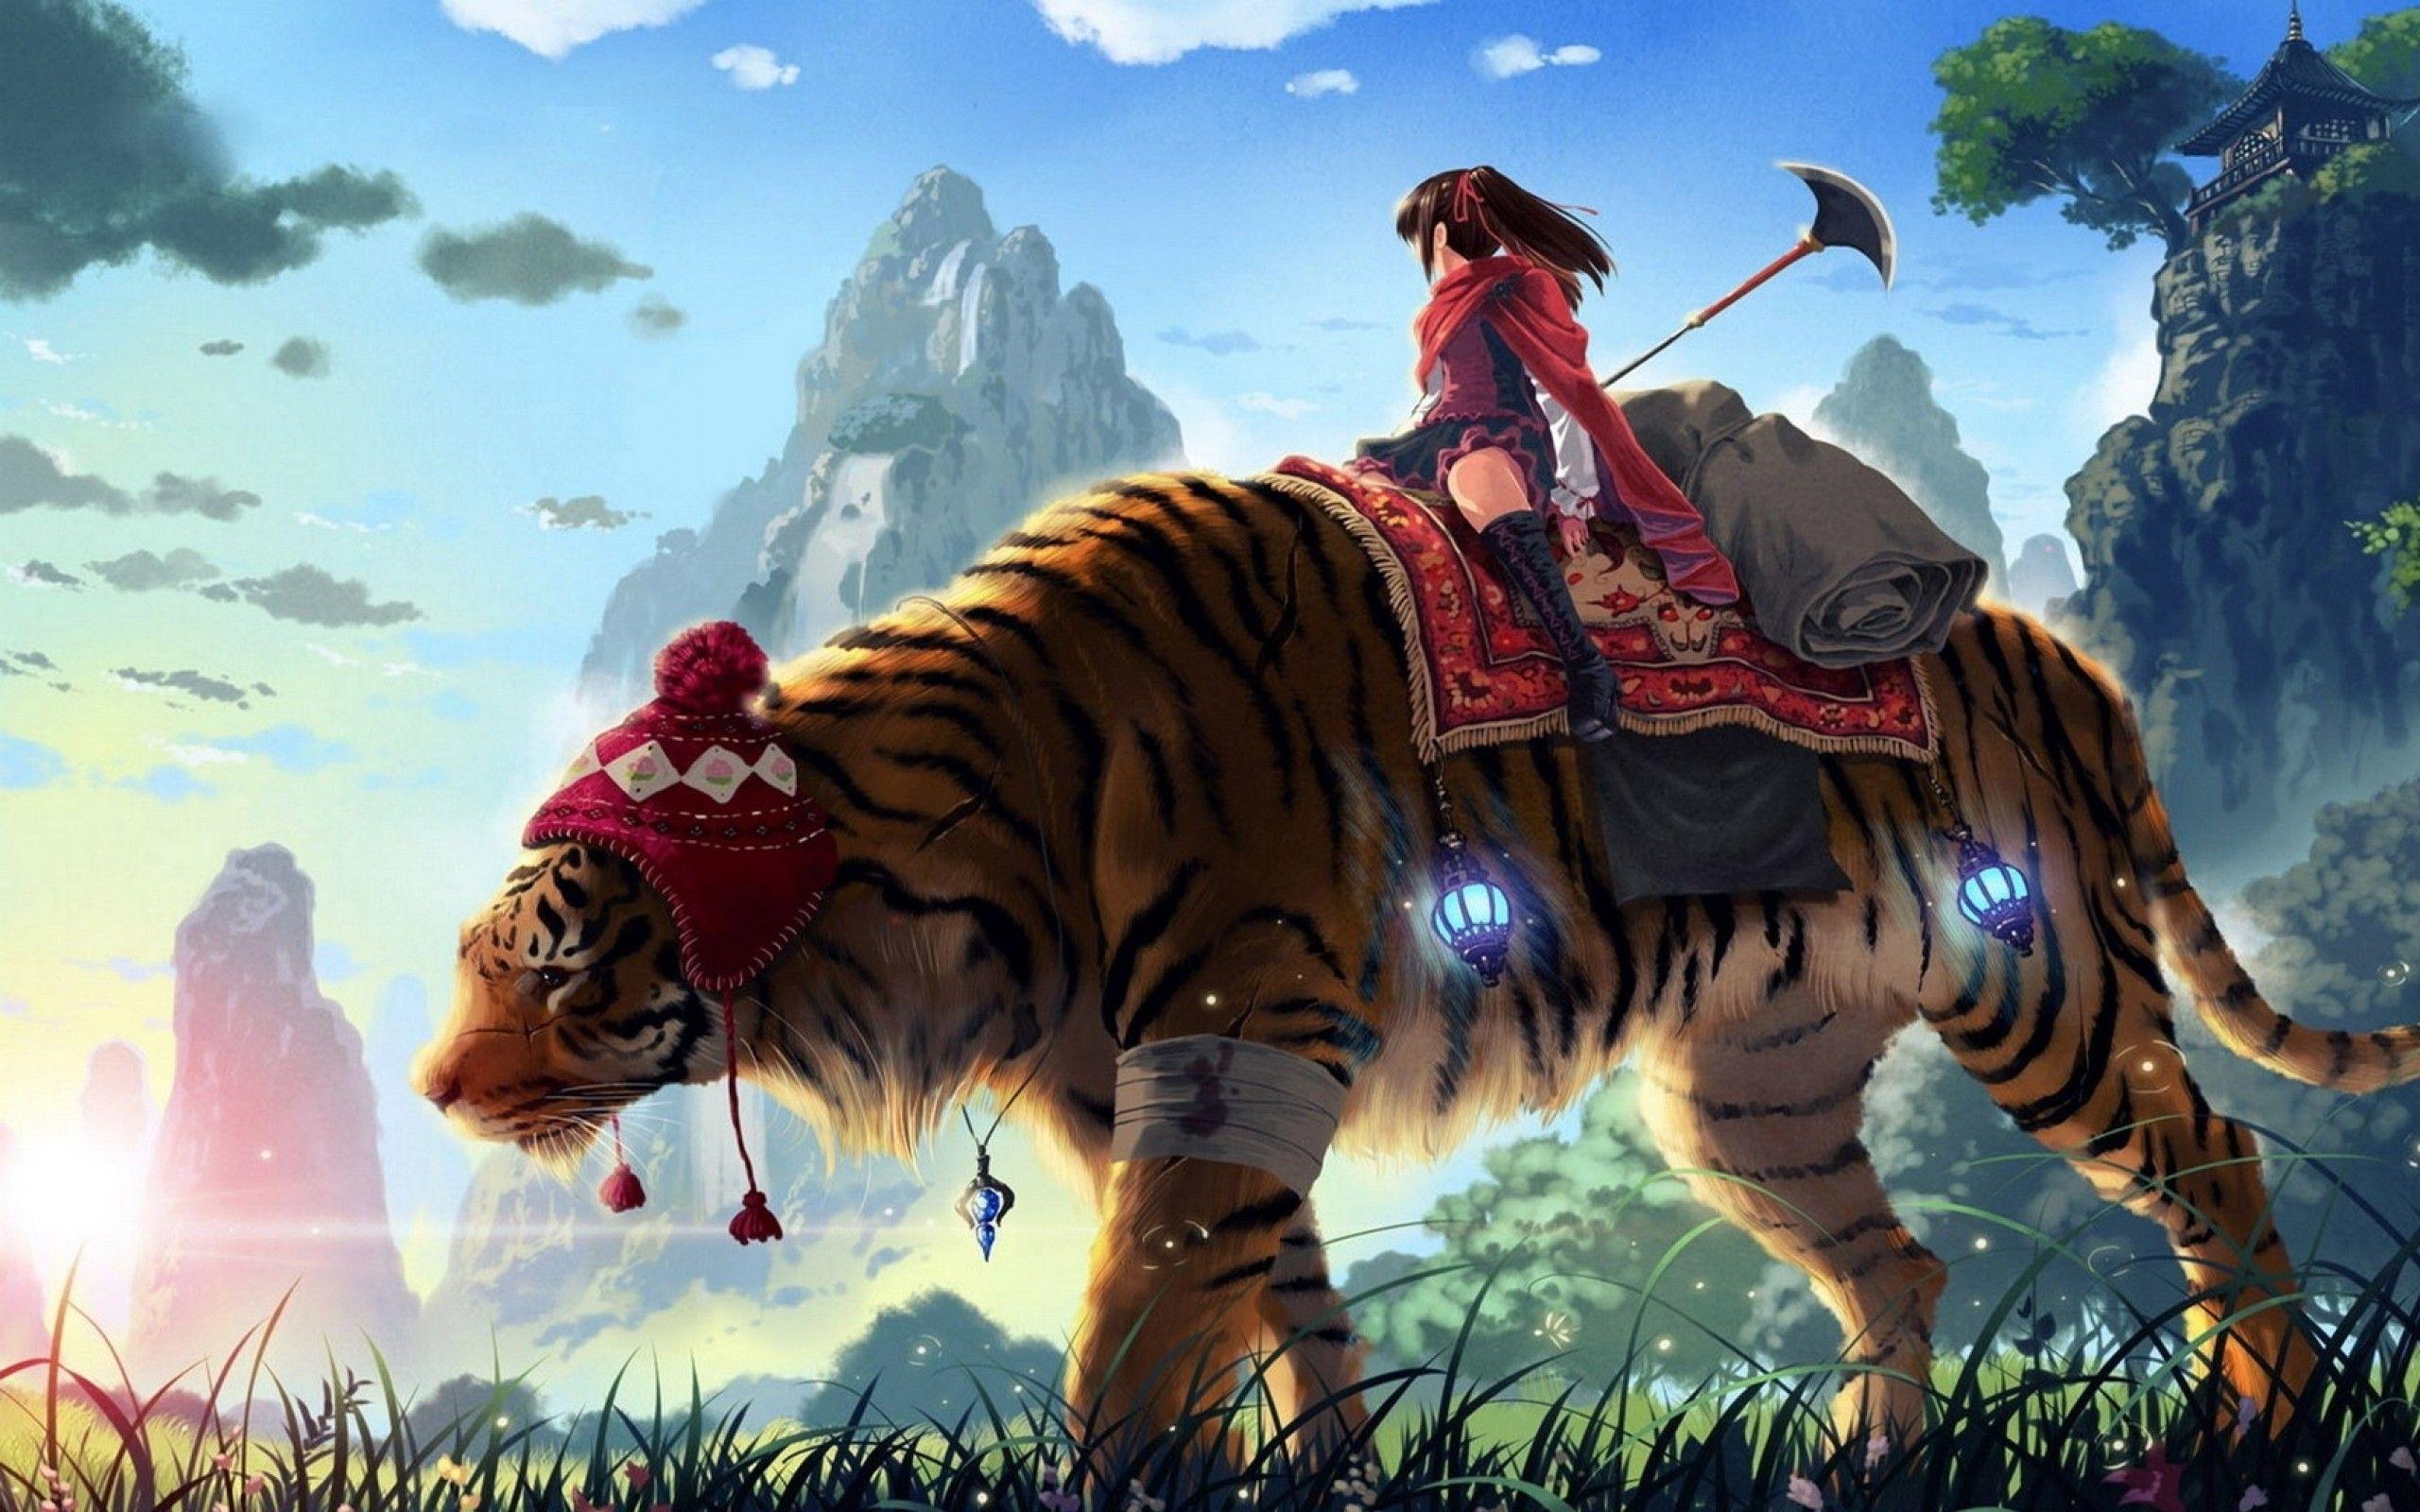 Epic Anime wallpaperDownload free stunning background